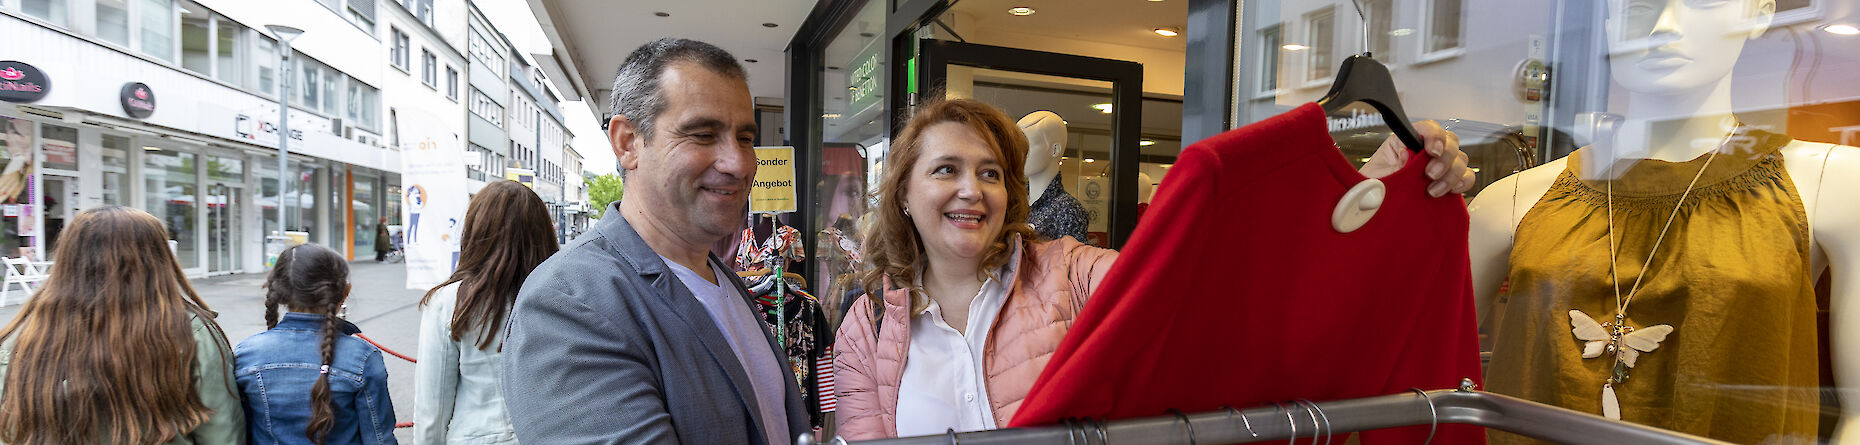 Eine Frau und ein Mann beim Einkaufen. Die Frau hält einen roten Pullover in der Hand.